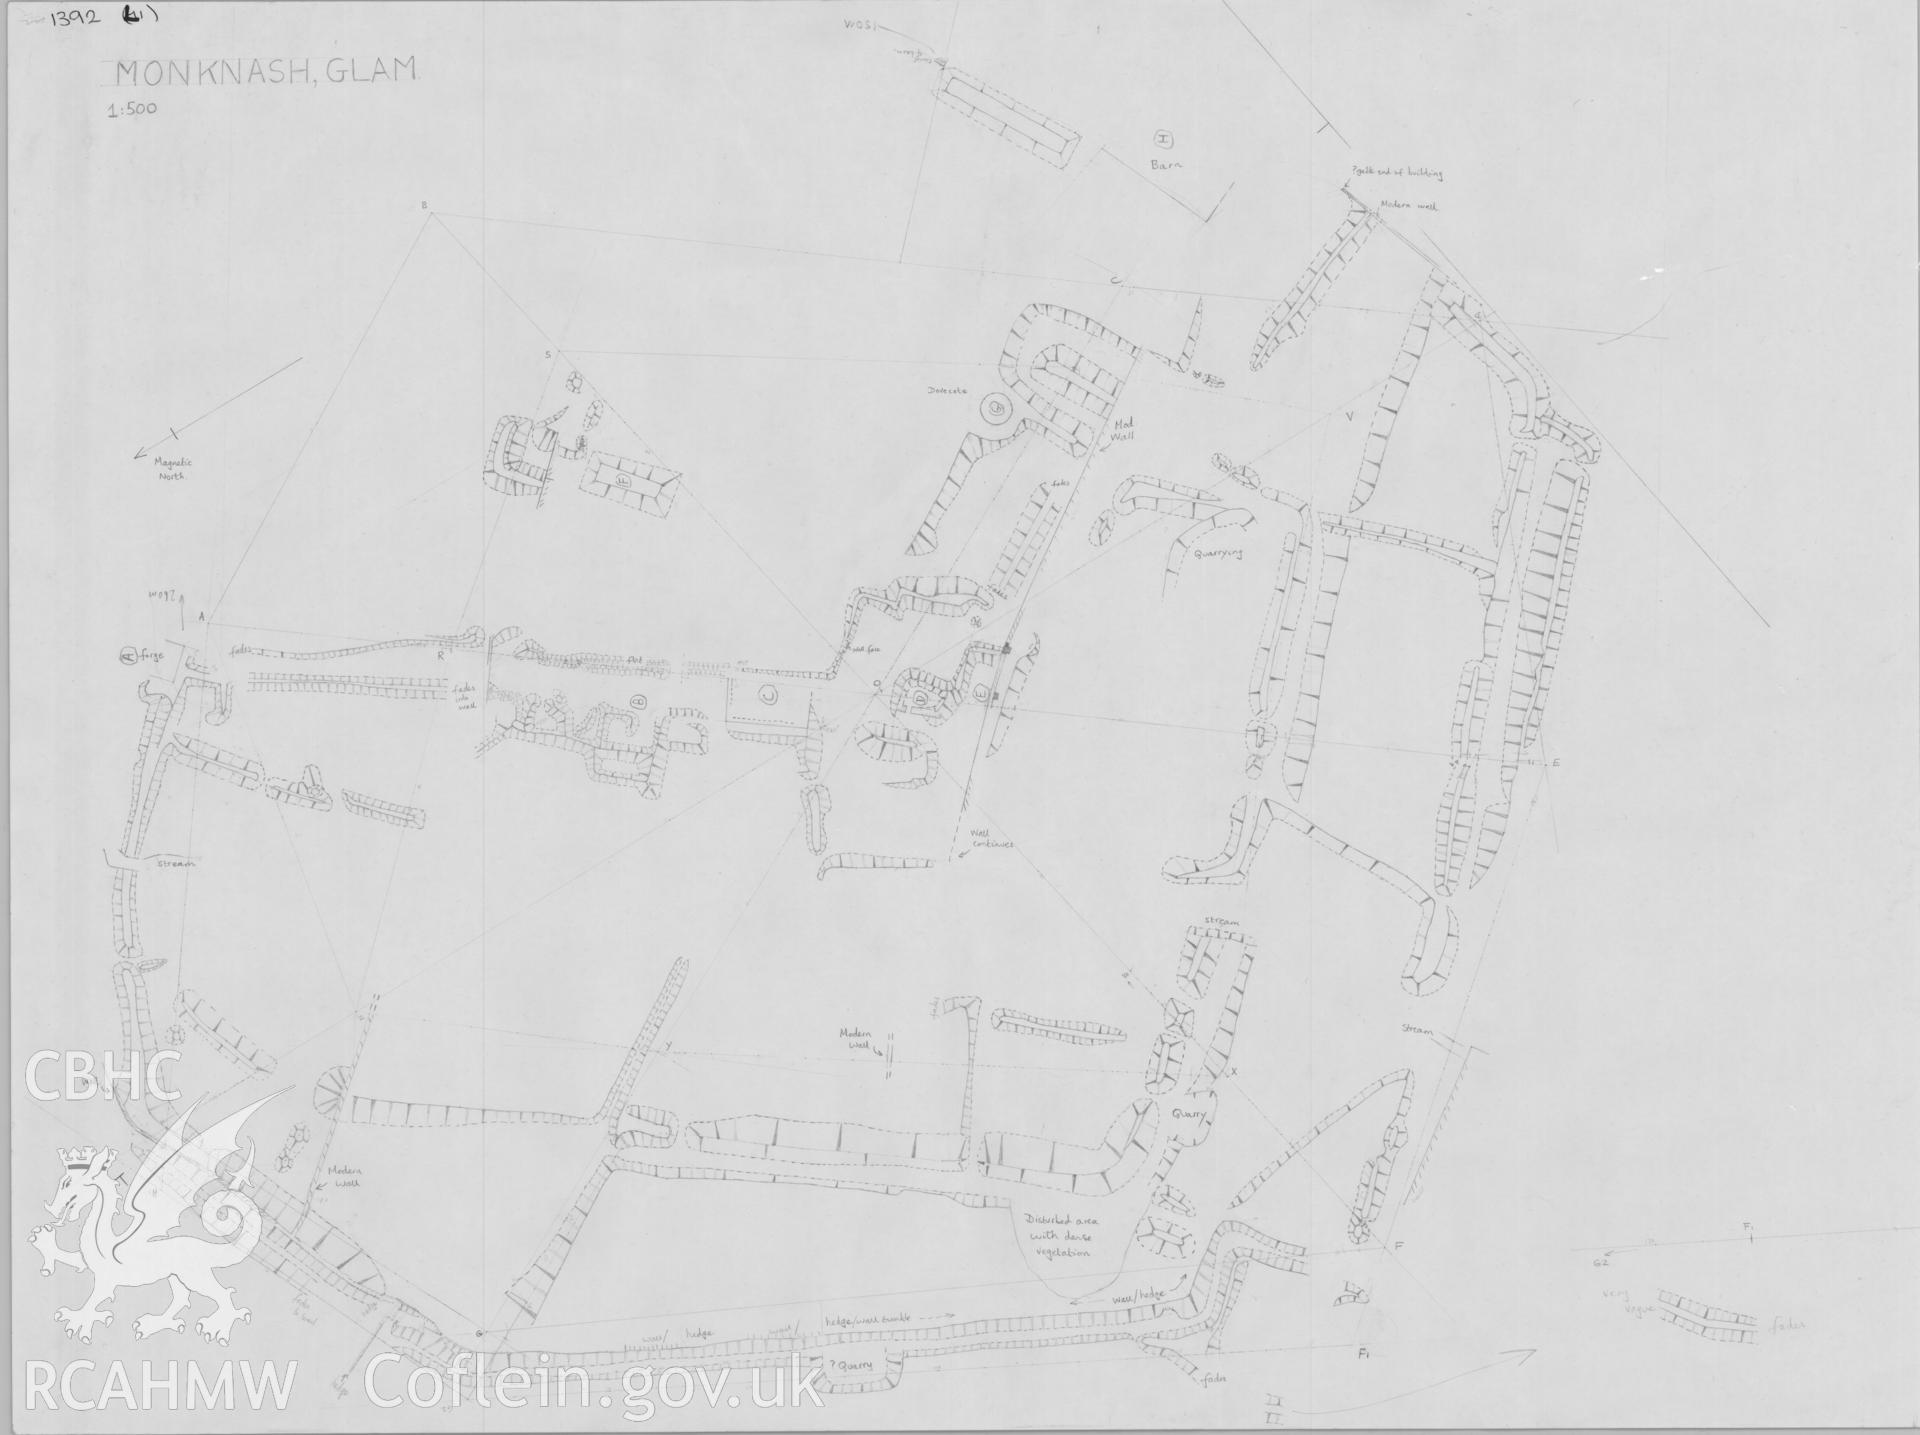 RCAHMW drawing showing plan of Monknash Grange, Glamorgan.